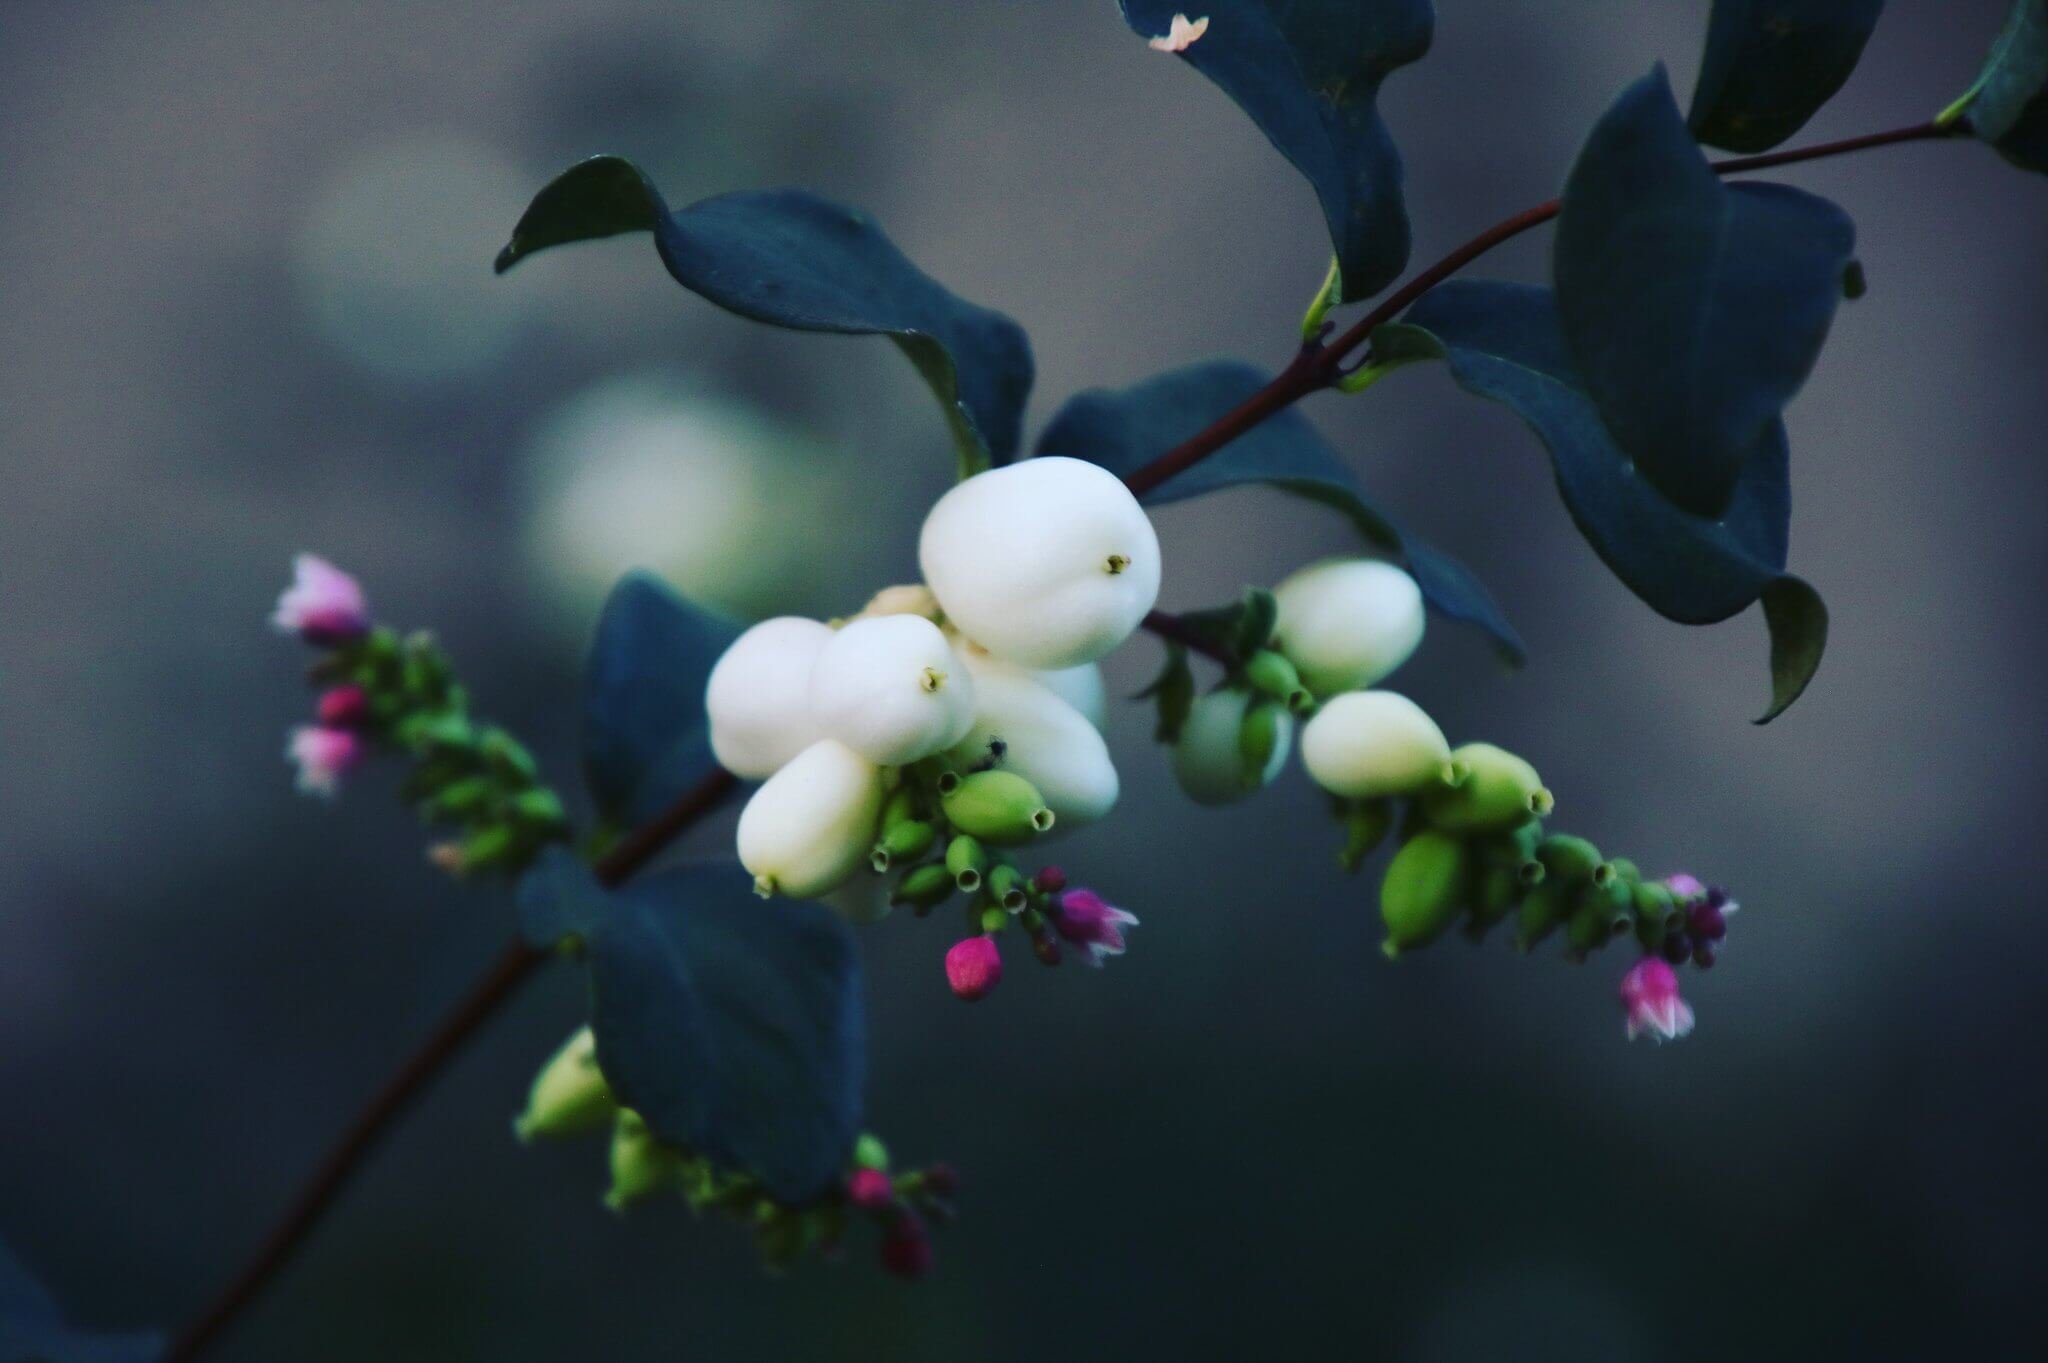 Snowberry - Wild White Snowberry